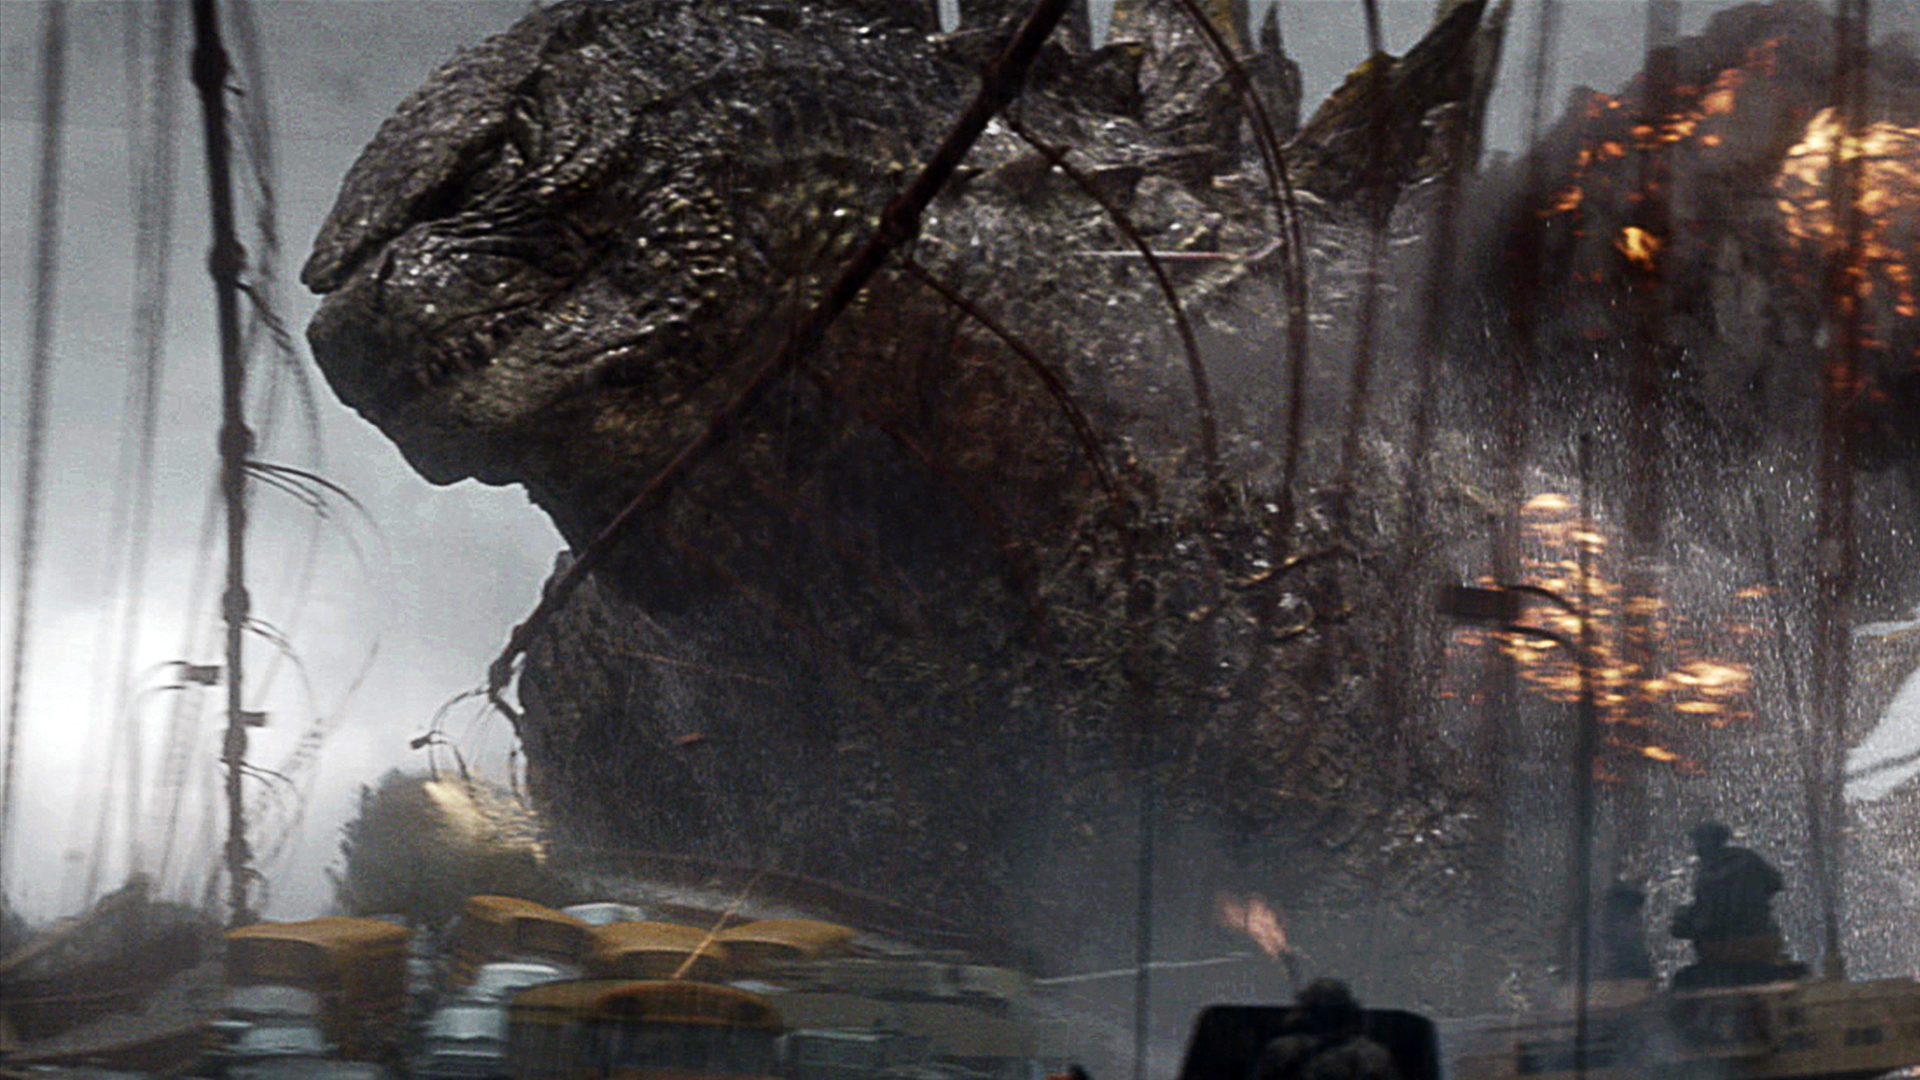 Godzilla Movie Image HD 1080p Wallpaper And Patible